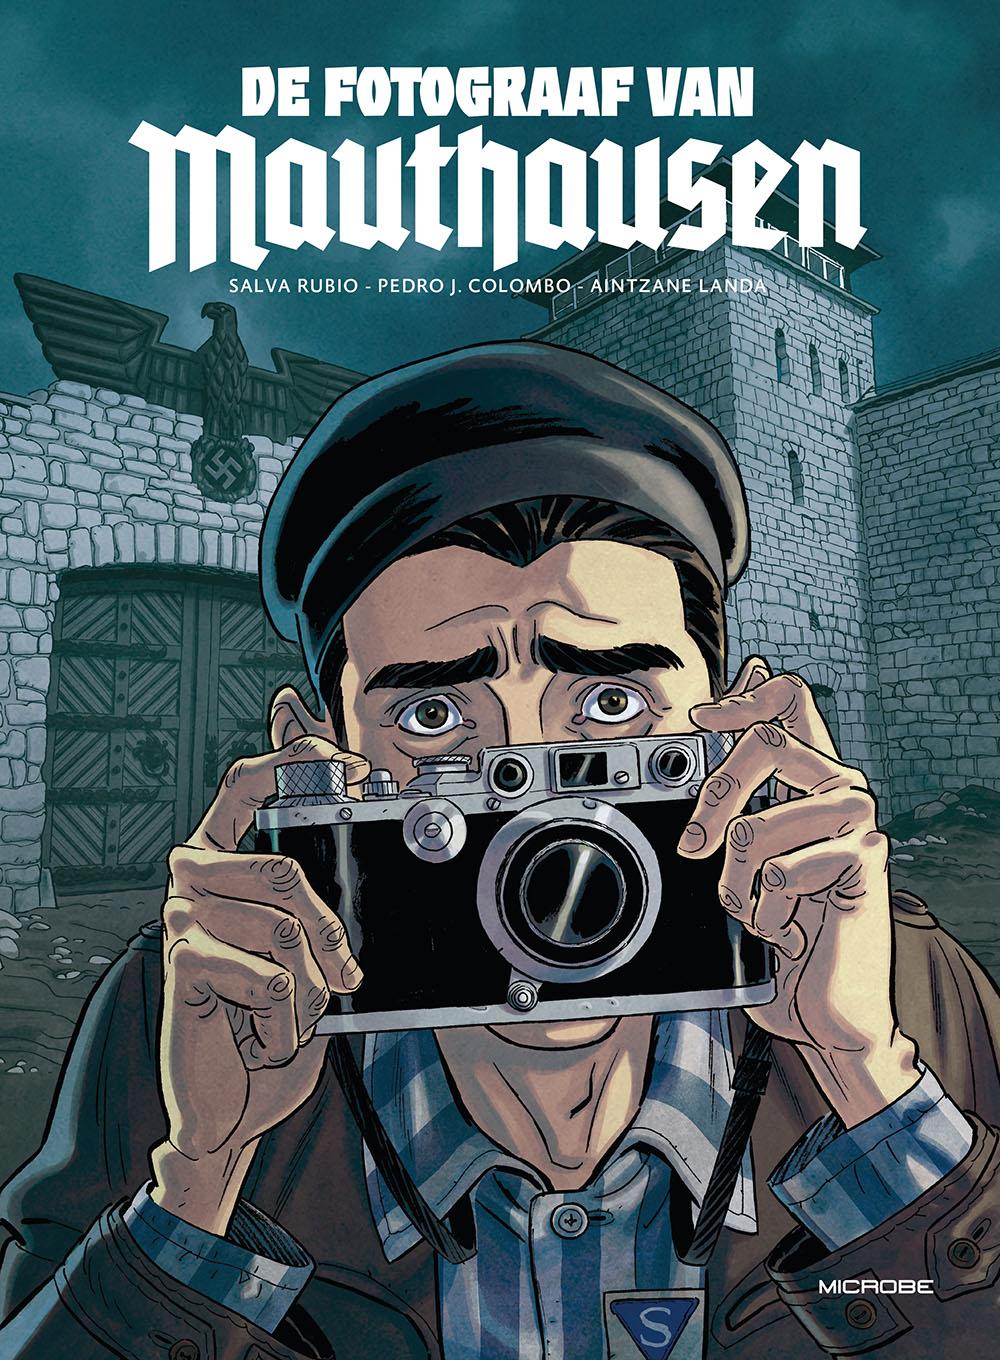 De fotograaf van Mauthausen - Microbe